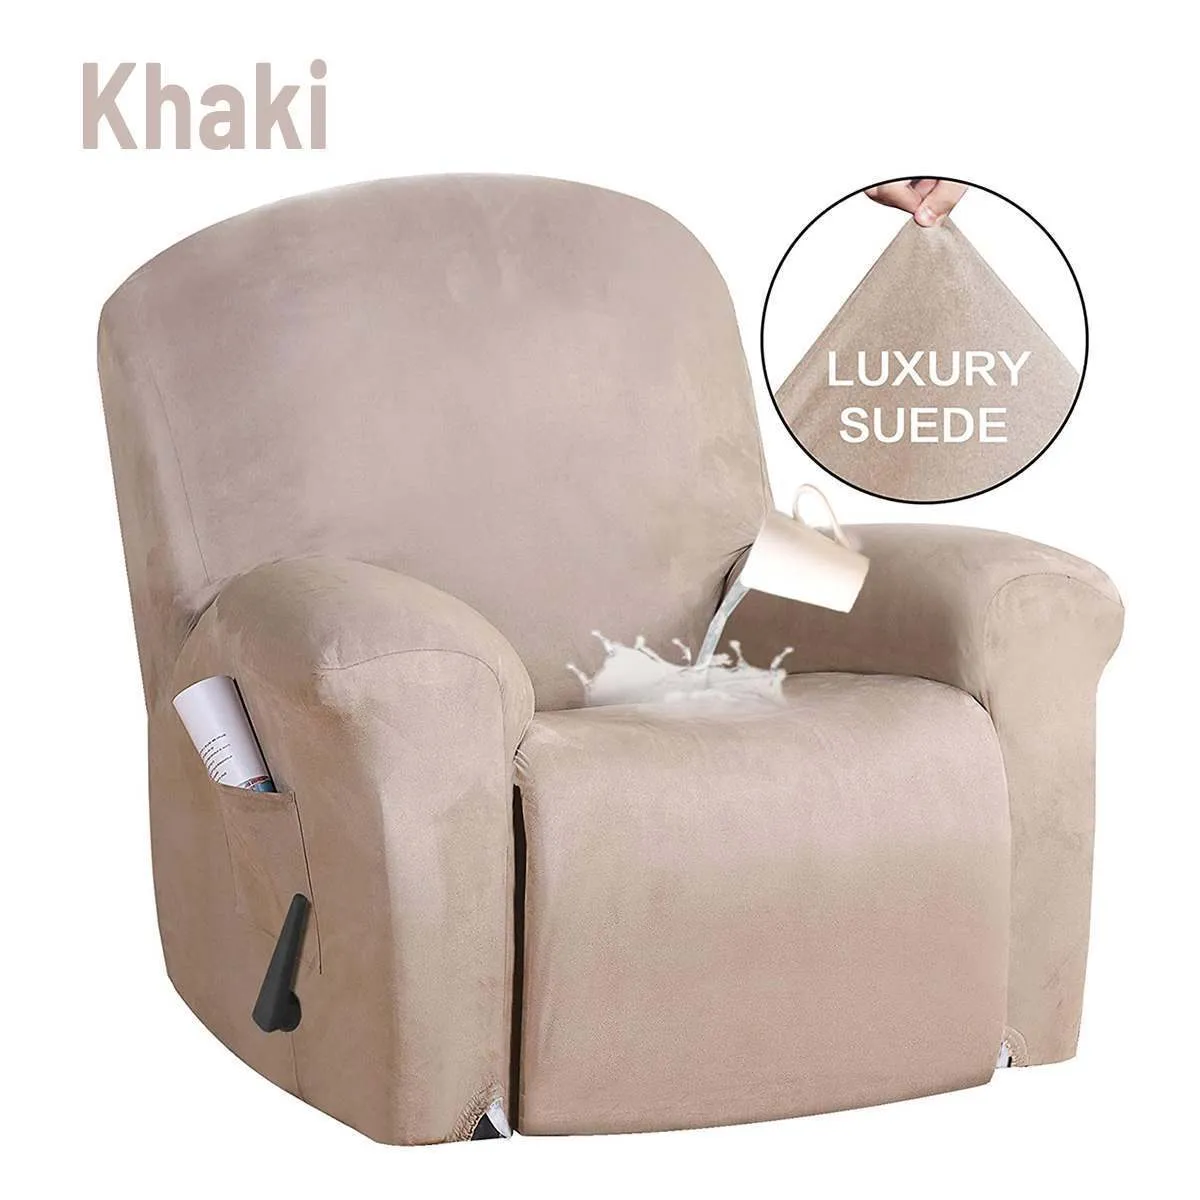 Housse de fauteuil inclinable en daim tout compris chaise extensible imperméable antidérapante housse anti-poussière Massage canapé chaise protecteur de siège 2343j